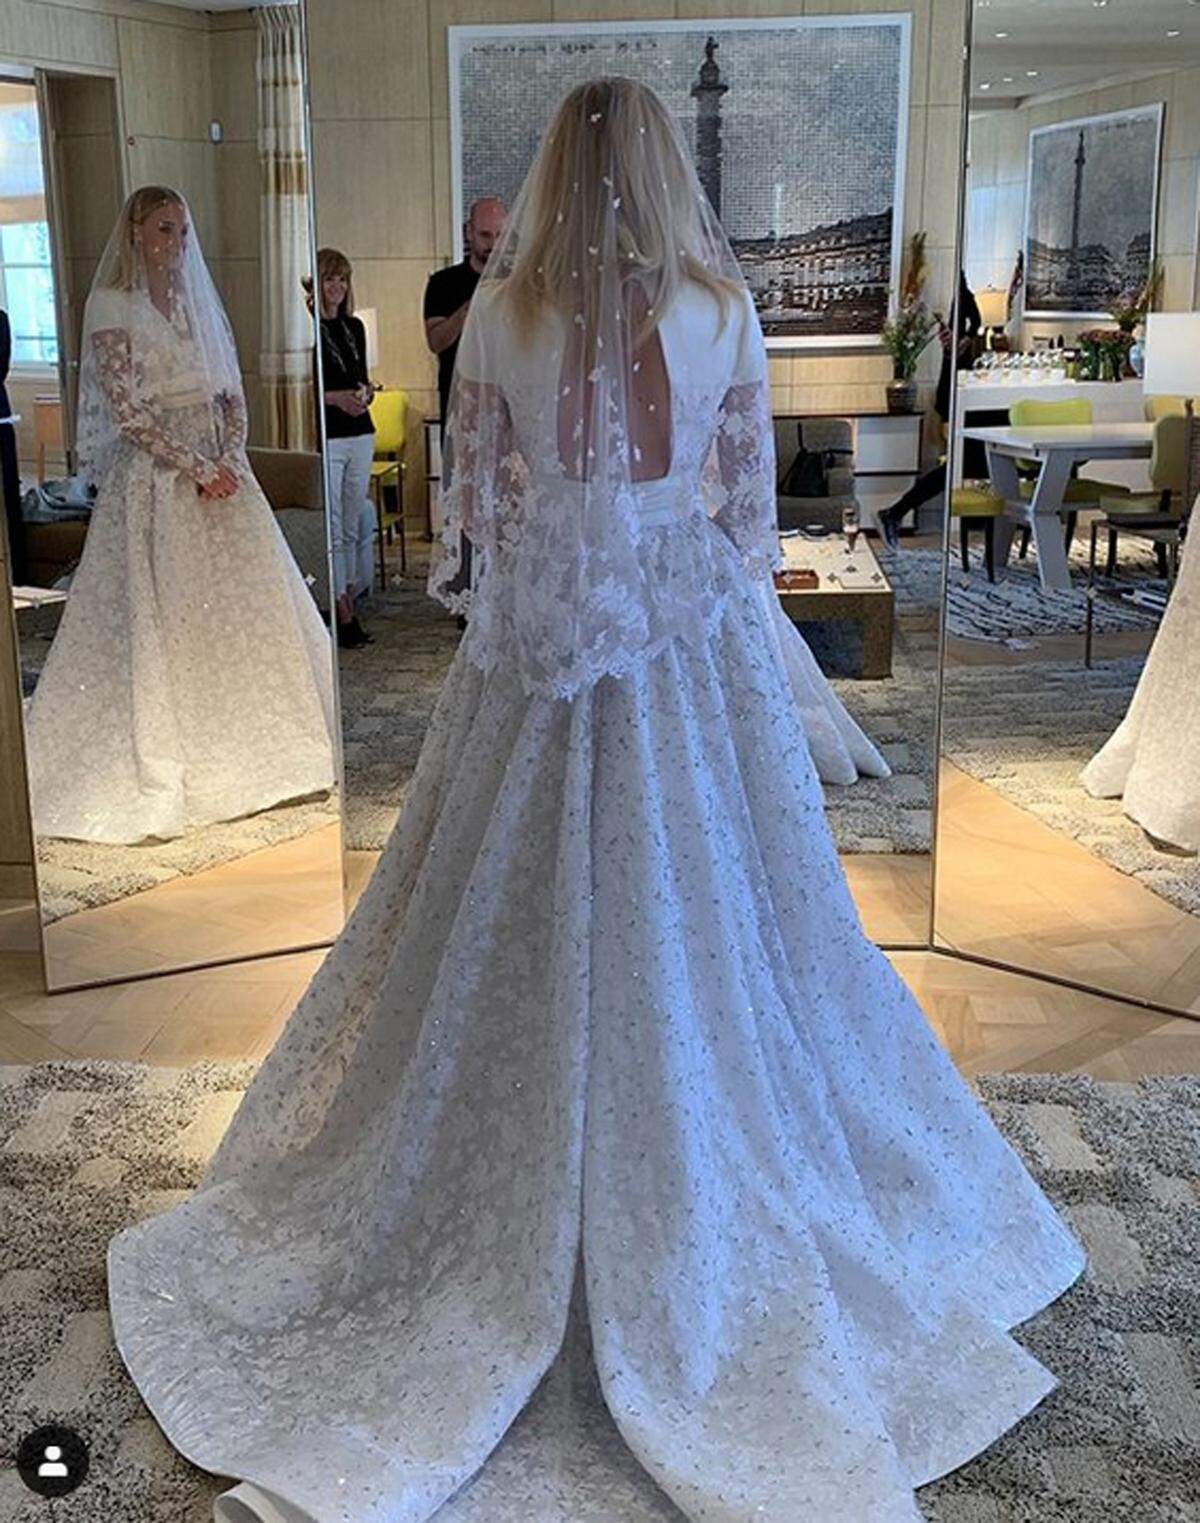 Medienberichten zufolge fand die Feier in einem Schloss in Sarrians in Südfrankreich statt. Auf Instagram veröffentlichte Modeschöpfer Nicolas Ghesquiere (Louis Vuitton) ein Foto von Turner in ihrem Kleid. "Absolut beauty" schrieb er dazu.